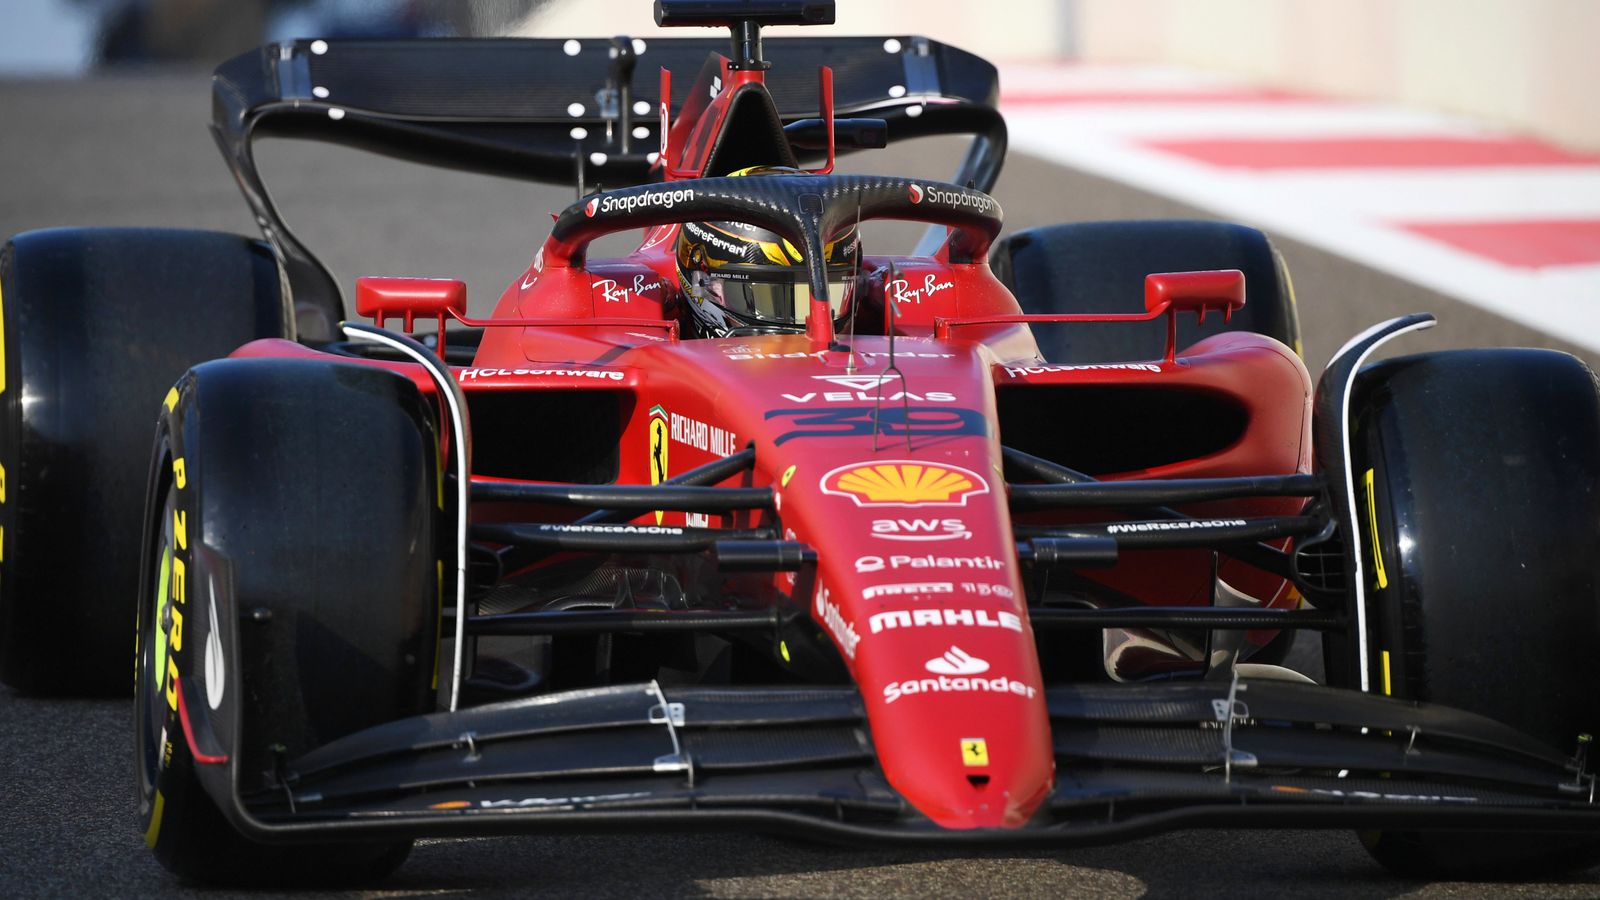 Ferrari siap jatuh cinta dengan mobil baru di Hari Valentine saat mereka mengonfirmasi peluncuran 14 Februari